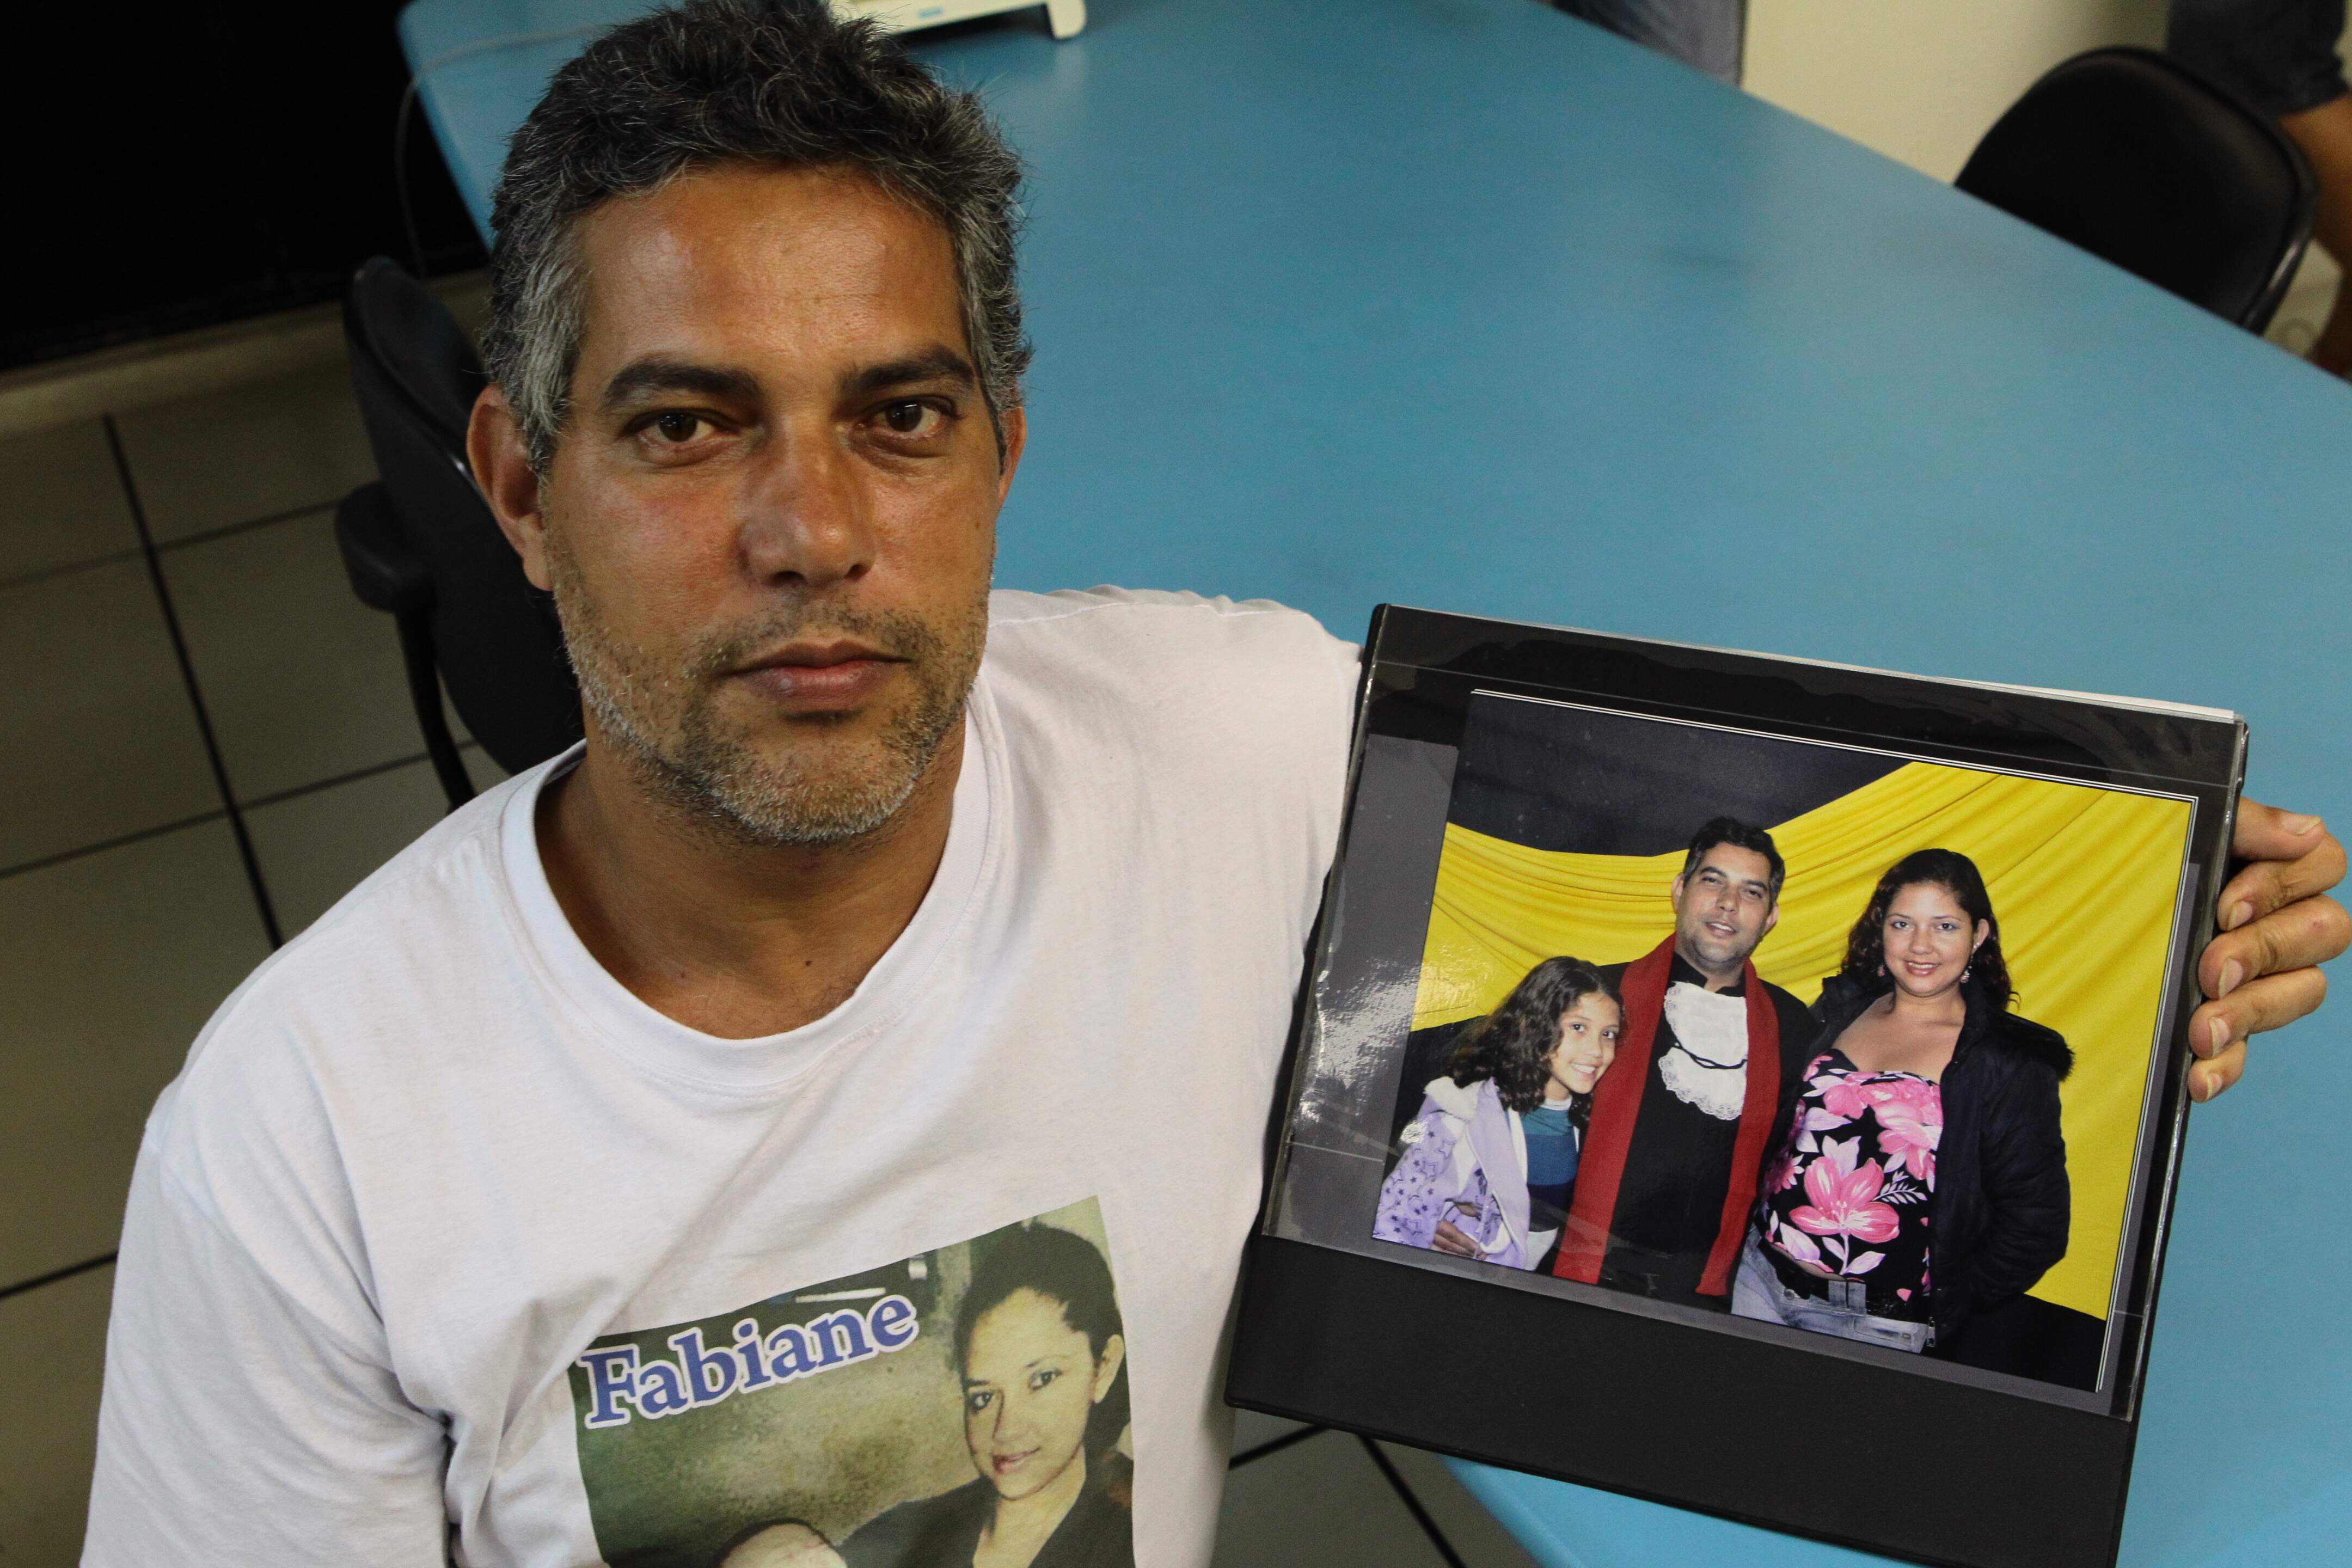 O viúvo, porteiro Jaílson Alves das Neves, mostra foto com a mulher, Fabiane